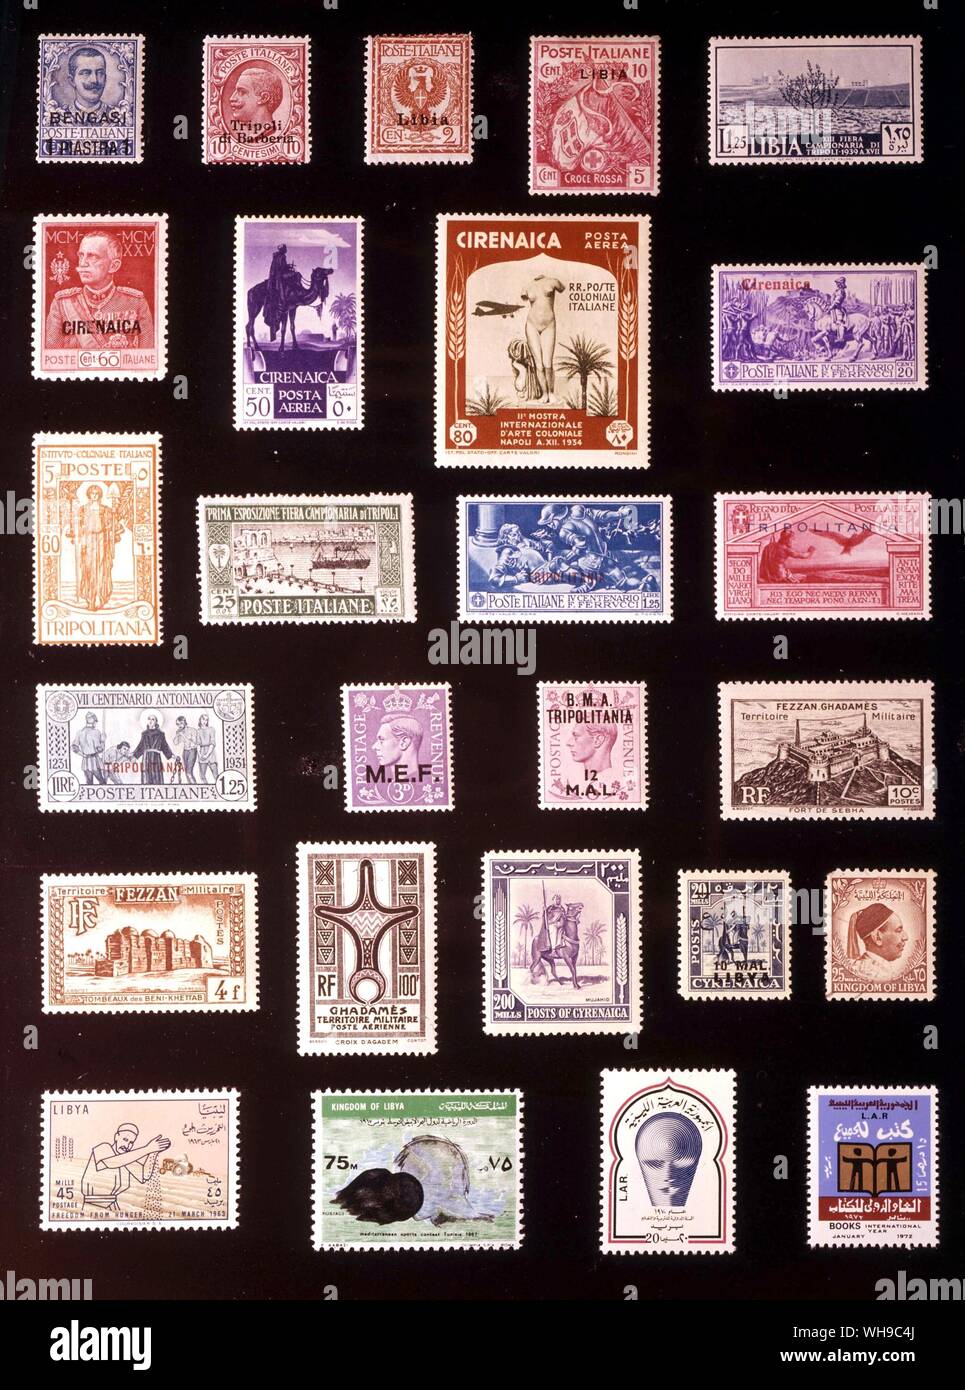 AFRICA - LIBIA: (da sinistra a destra) 1. Bengasi, 1 piastre, 1911, 2. Tripoli, 10 centesimi, 1909, 3. Libia, 2 centesimi, 1912, 4. Libia, 10 + 5 centesimi, 1915, 5. Libia, 1,25 lire, 1939, 6. Cyrenaic, 60 centesimi, 1925, 7. Cirenaica, 50 centesimi, 1932, 8. Cirenaica, 80 centesimi, 1934, 9. Cirenaica, 20 centesimi, 1930, 10. Tripolitania, 60 centesimi, 1926, 11. Tripolitania, 25 centesimi, 1927, 12. Tripolitania, 1,25 lire, 1930, 13. Tripolitania, 1 lira, 1930, 14. Tripolitania, 1,25 lire, 1931, 15. Medio Oriente le forze, 3 pence, 1943, 16. Tripolitania, 12 M.A.L., 1948, 17. Fezzan e Ghadames, 10 Foto Stock